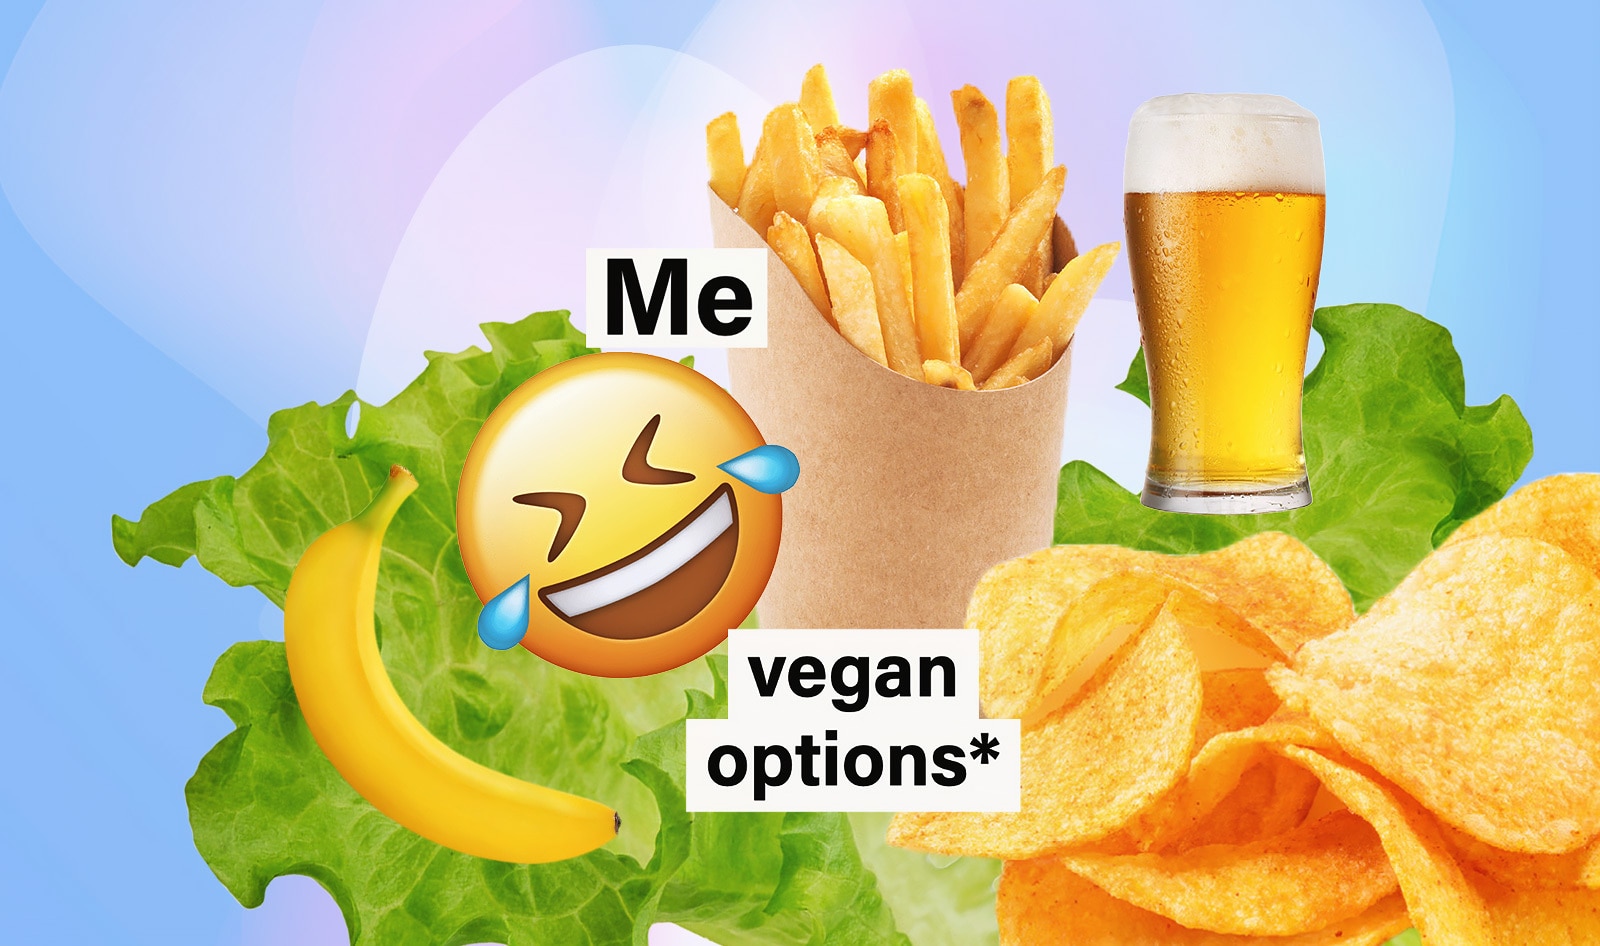 16 Relatable Funny Vegan Memes To Share | VegNews